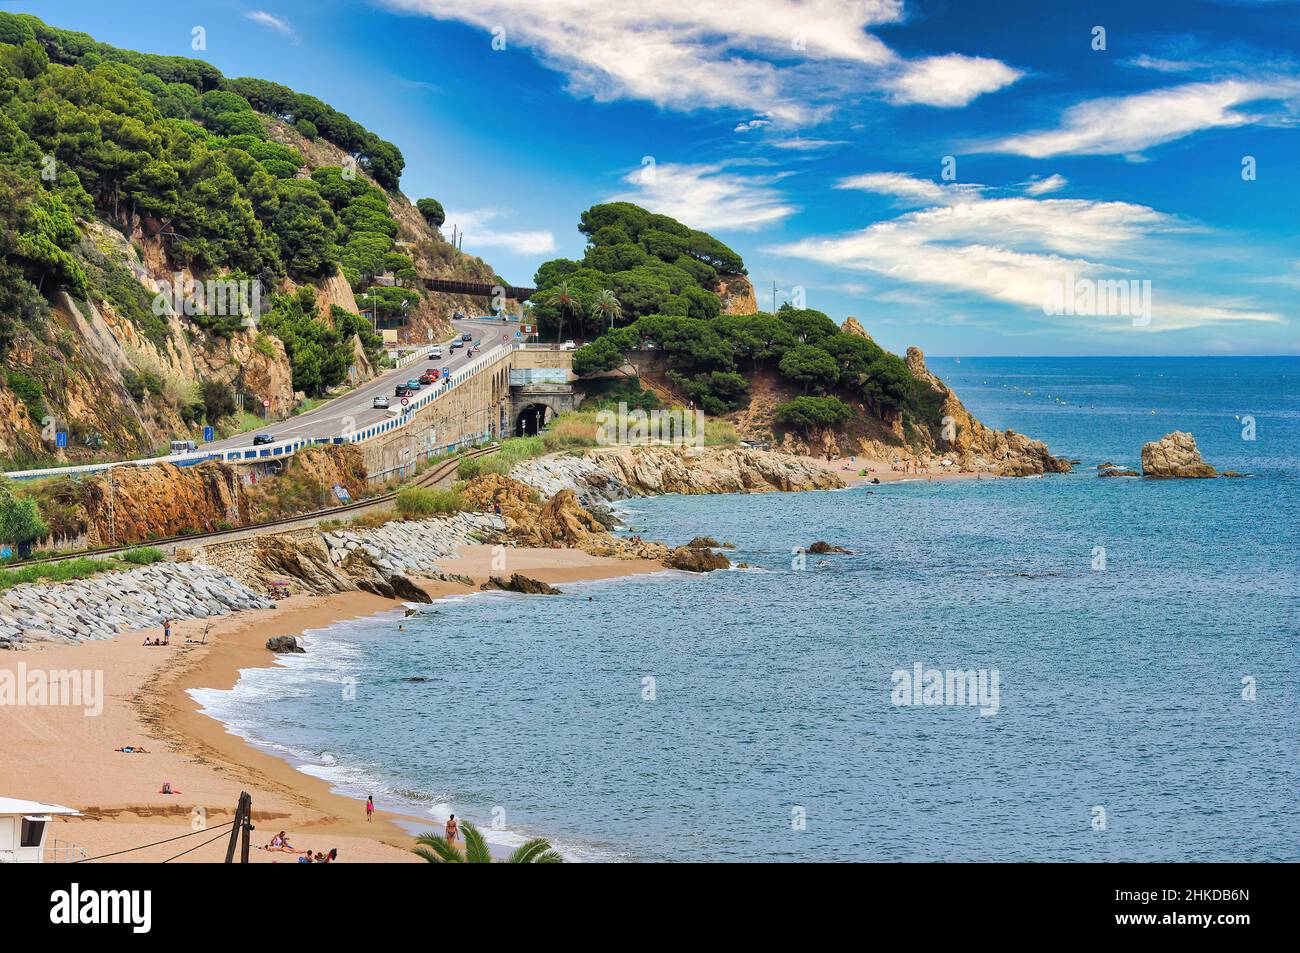 Die schönen Buchten von Sant Pol de Mar das kleinste und malerischste Dorf an der Costa Brava Maresme (Barcellona) Stockfoto